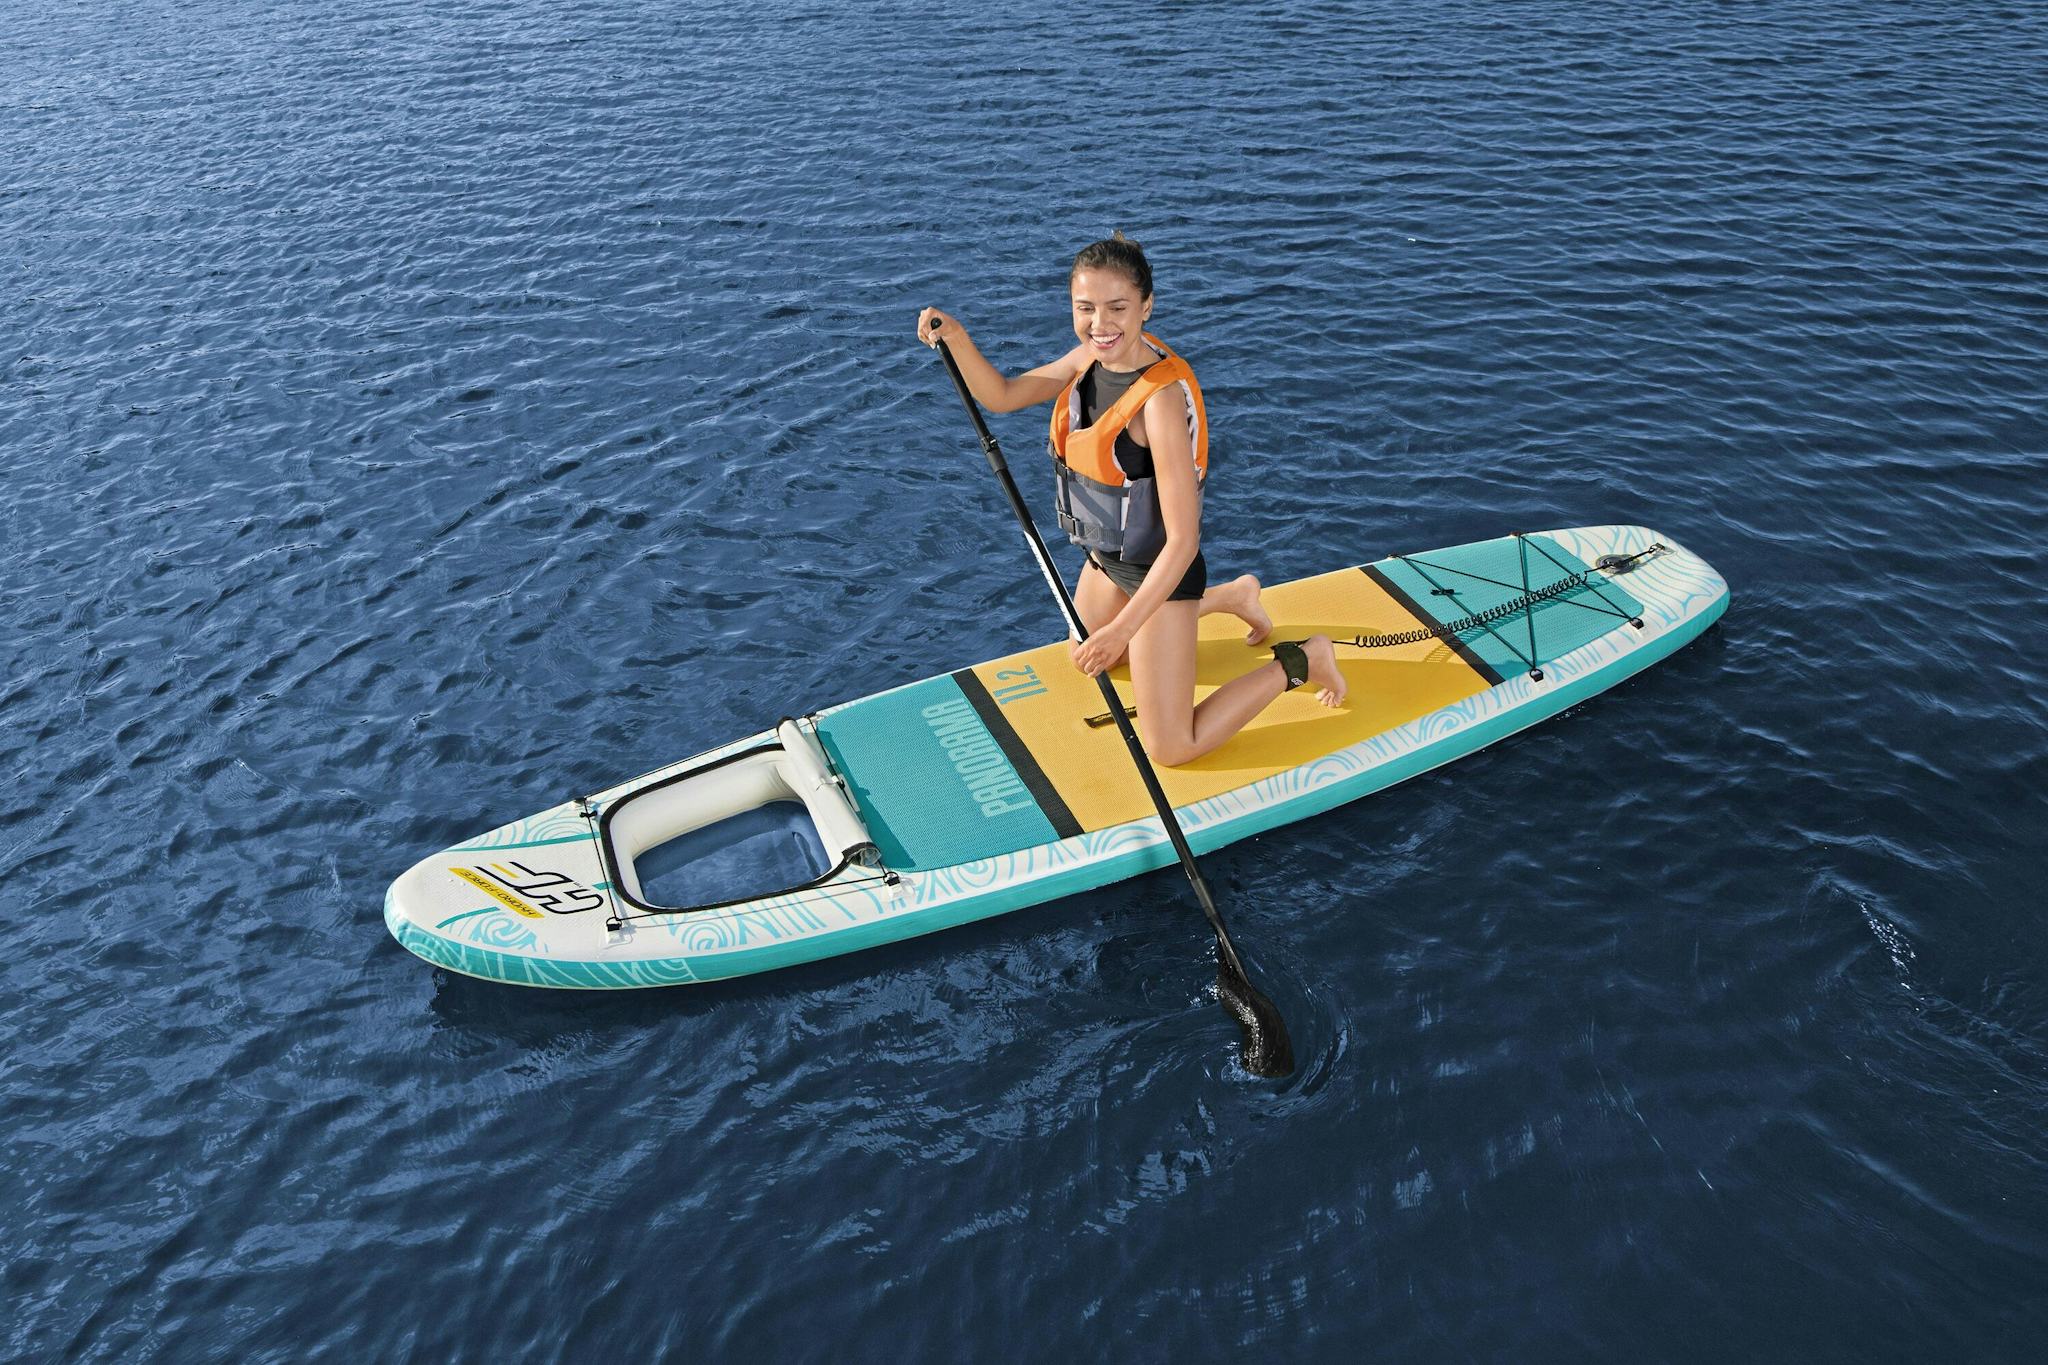 Sports d'eau Paddle gonflable Panorama Hydro-force™, 340 x 89 x 15 cm, 150 kg max, fenêtre transparente, poignées de transport, pompe, leash, sac de transport et pagaie Bestway 7